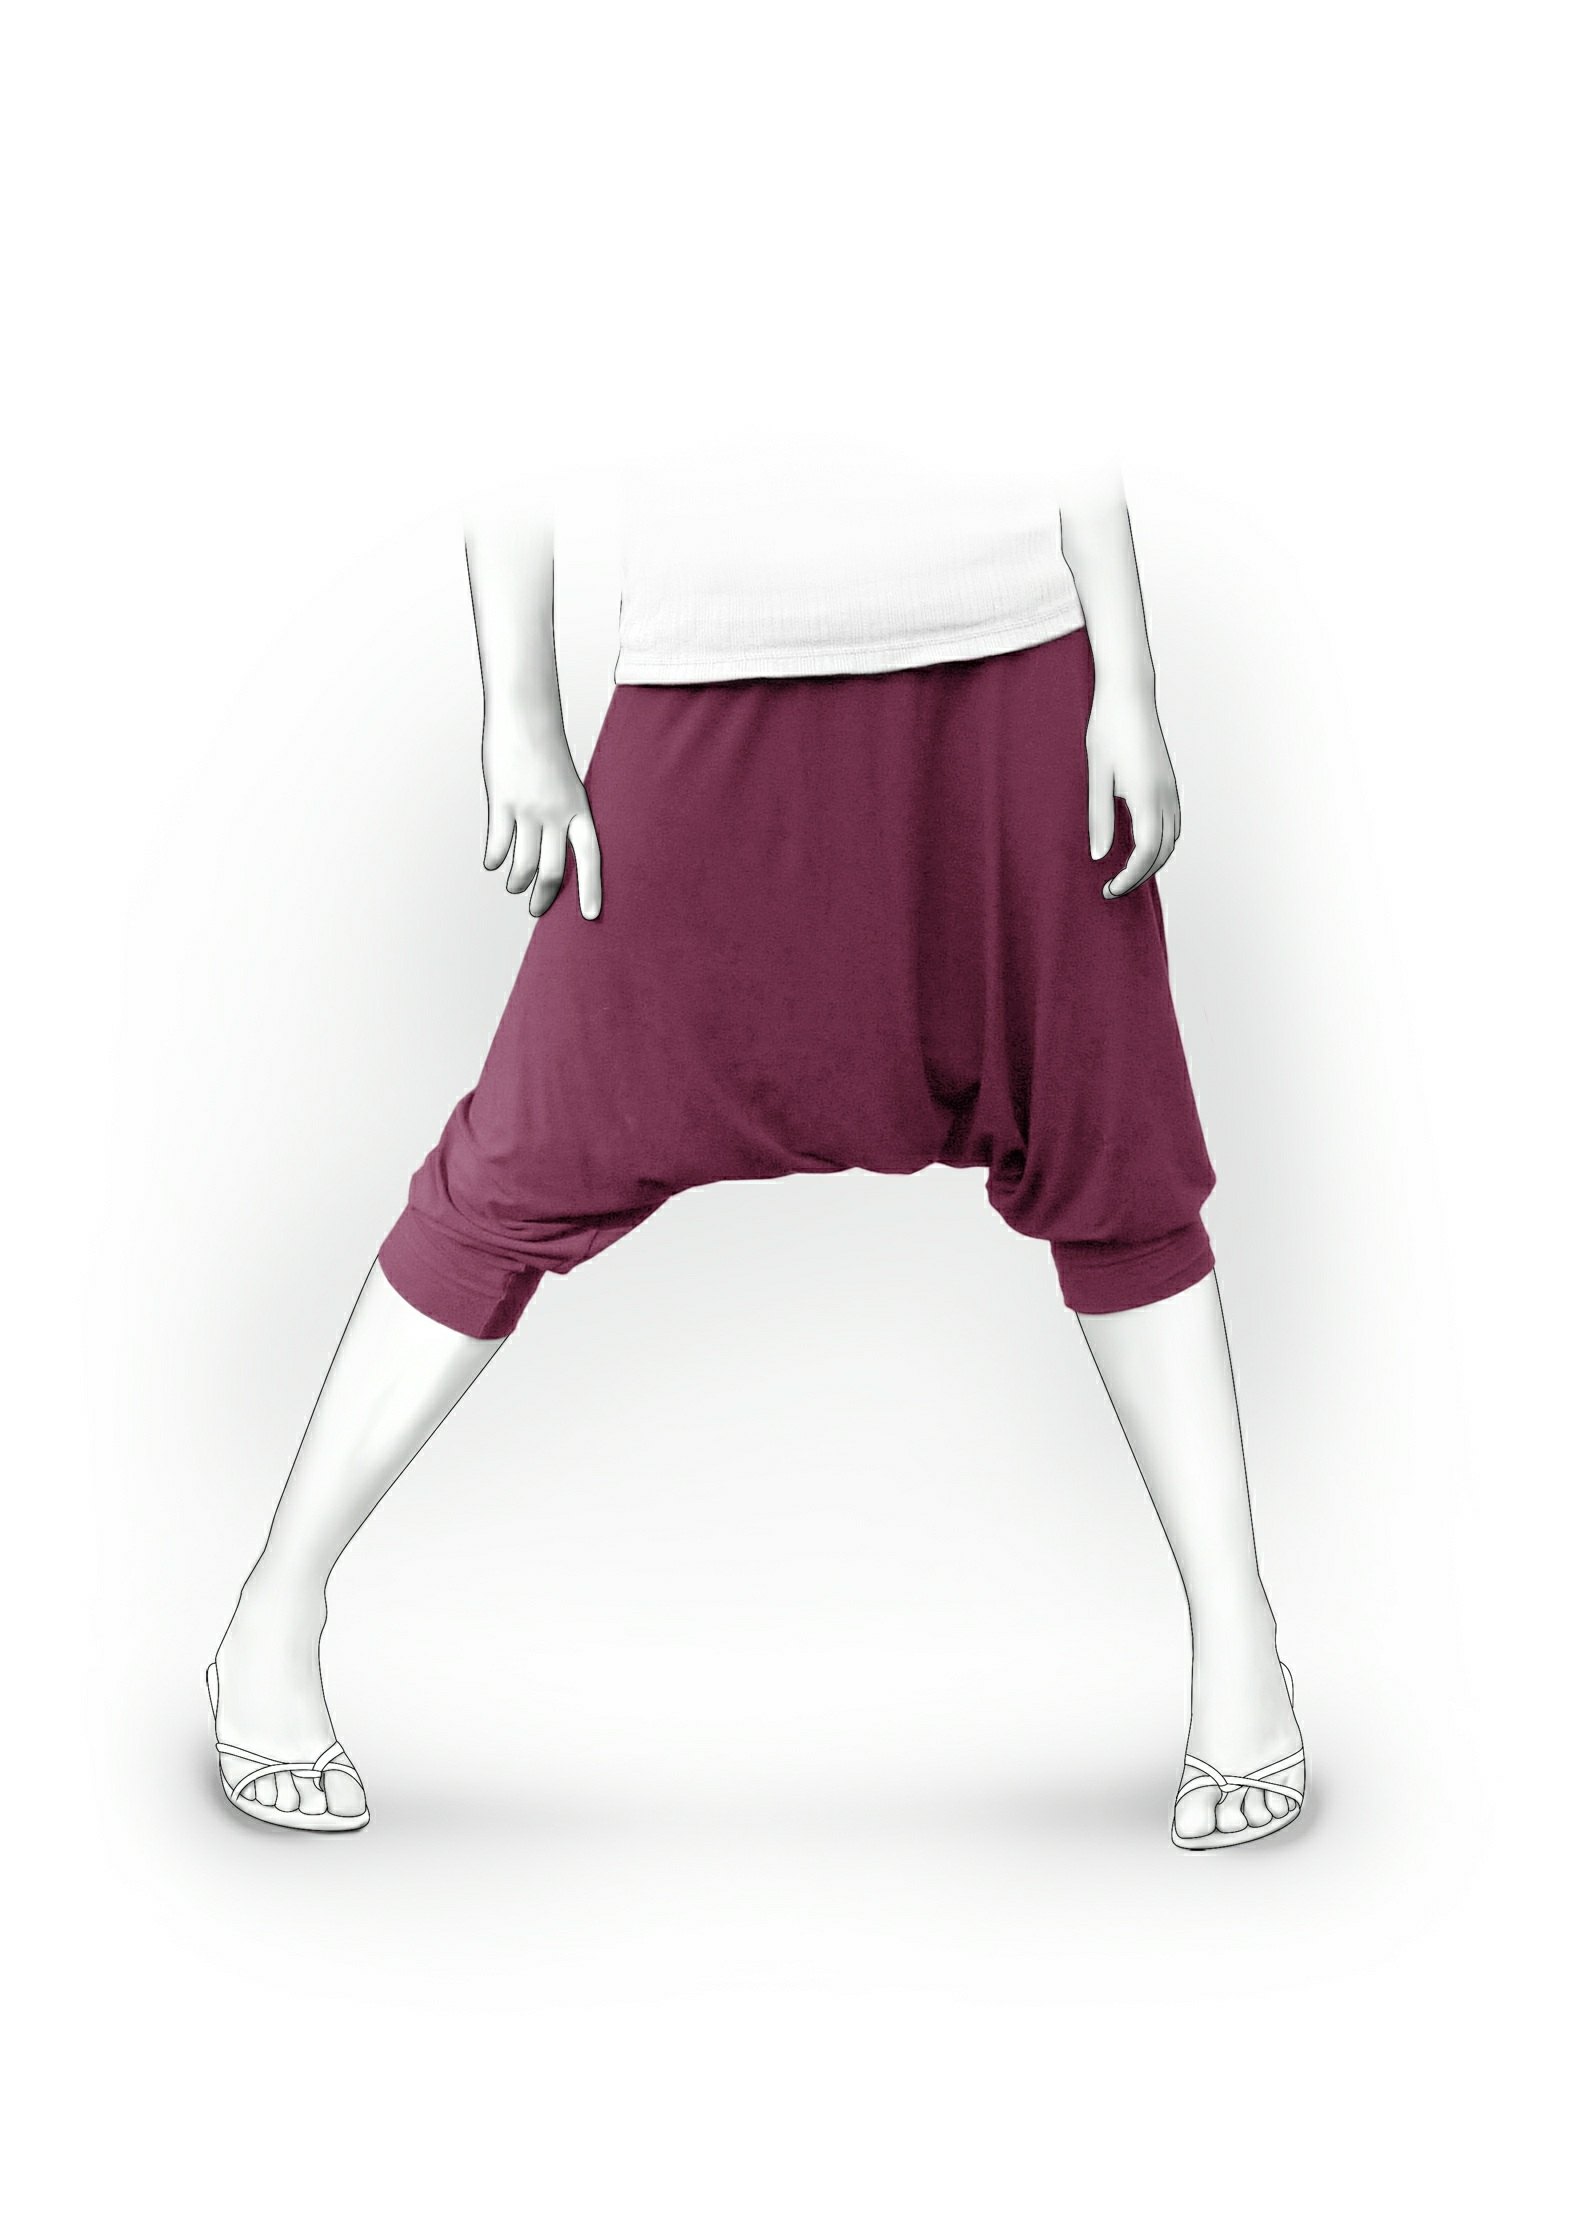 Echo's Yoga Pants Sizes 2T to 14 Kids PDF Pattern